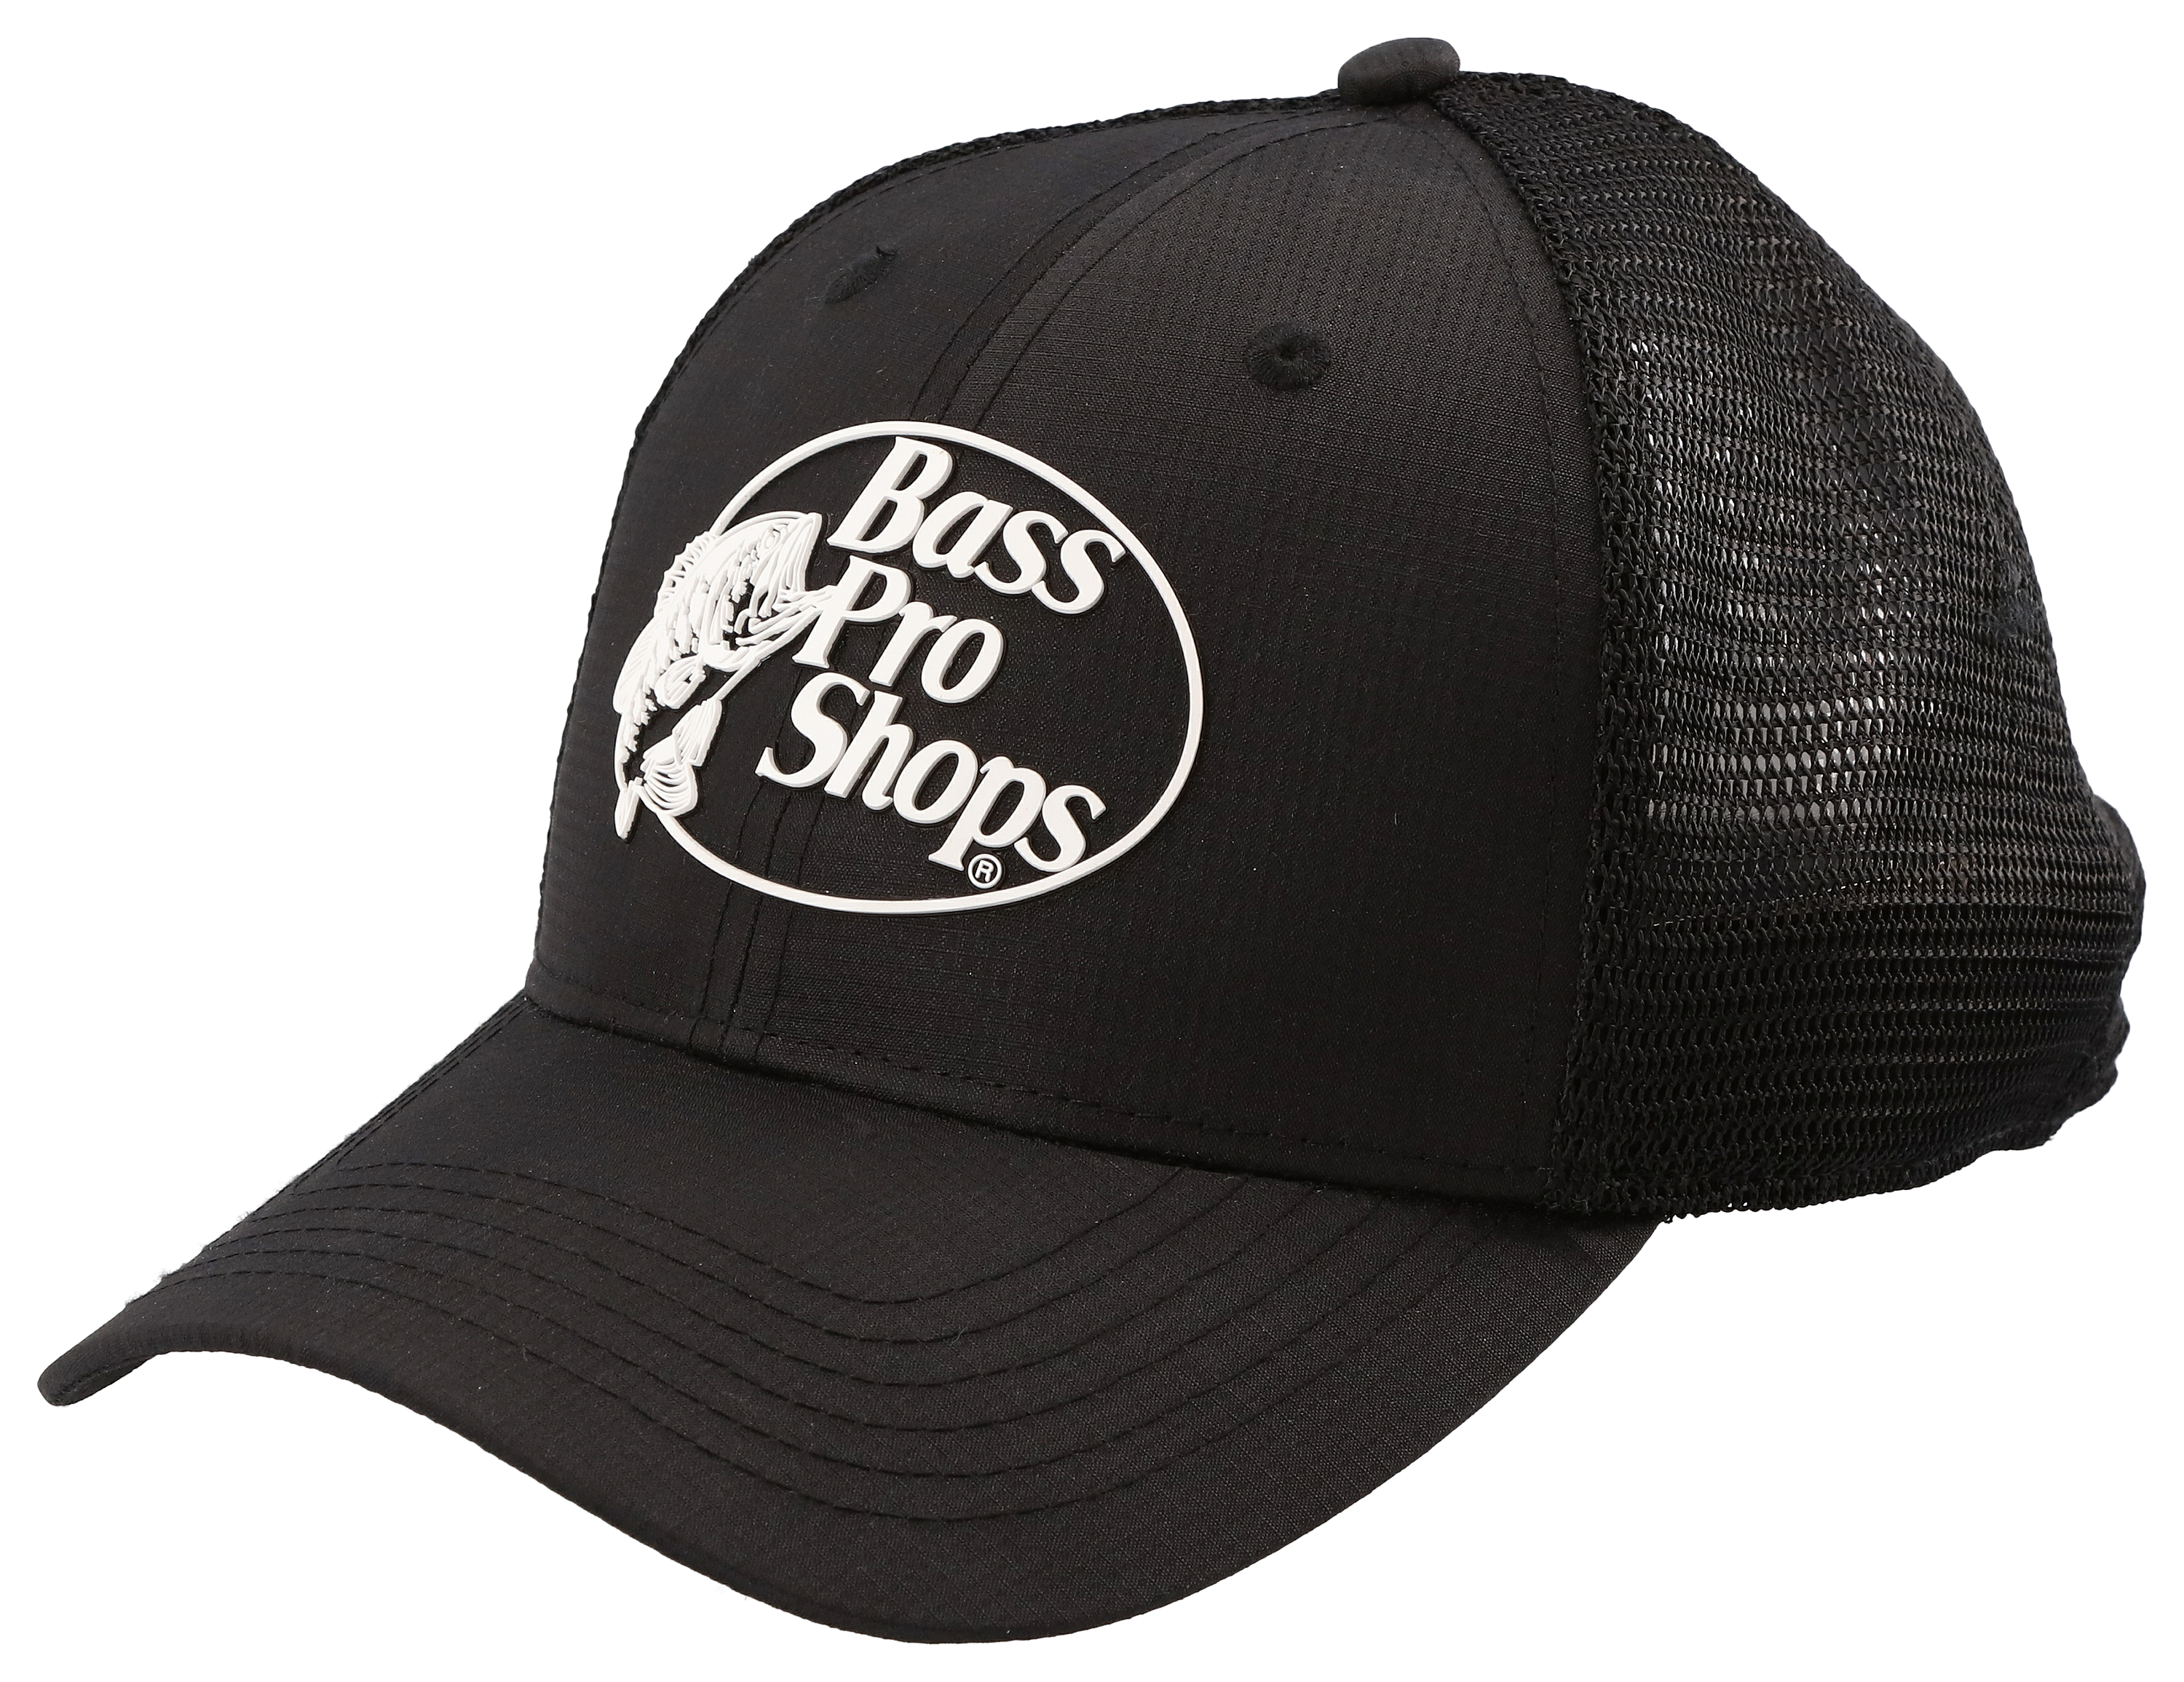 Bass Pro Shops Mesh Cap : : Fashion